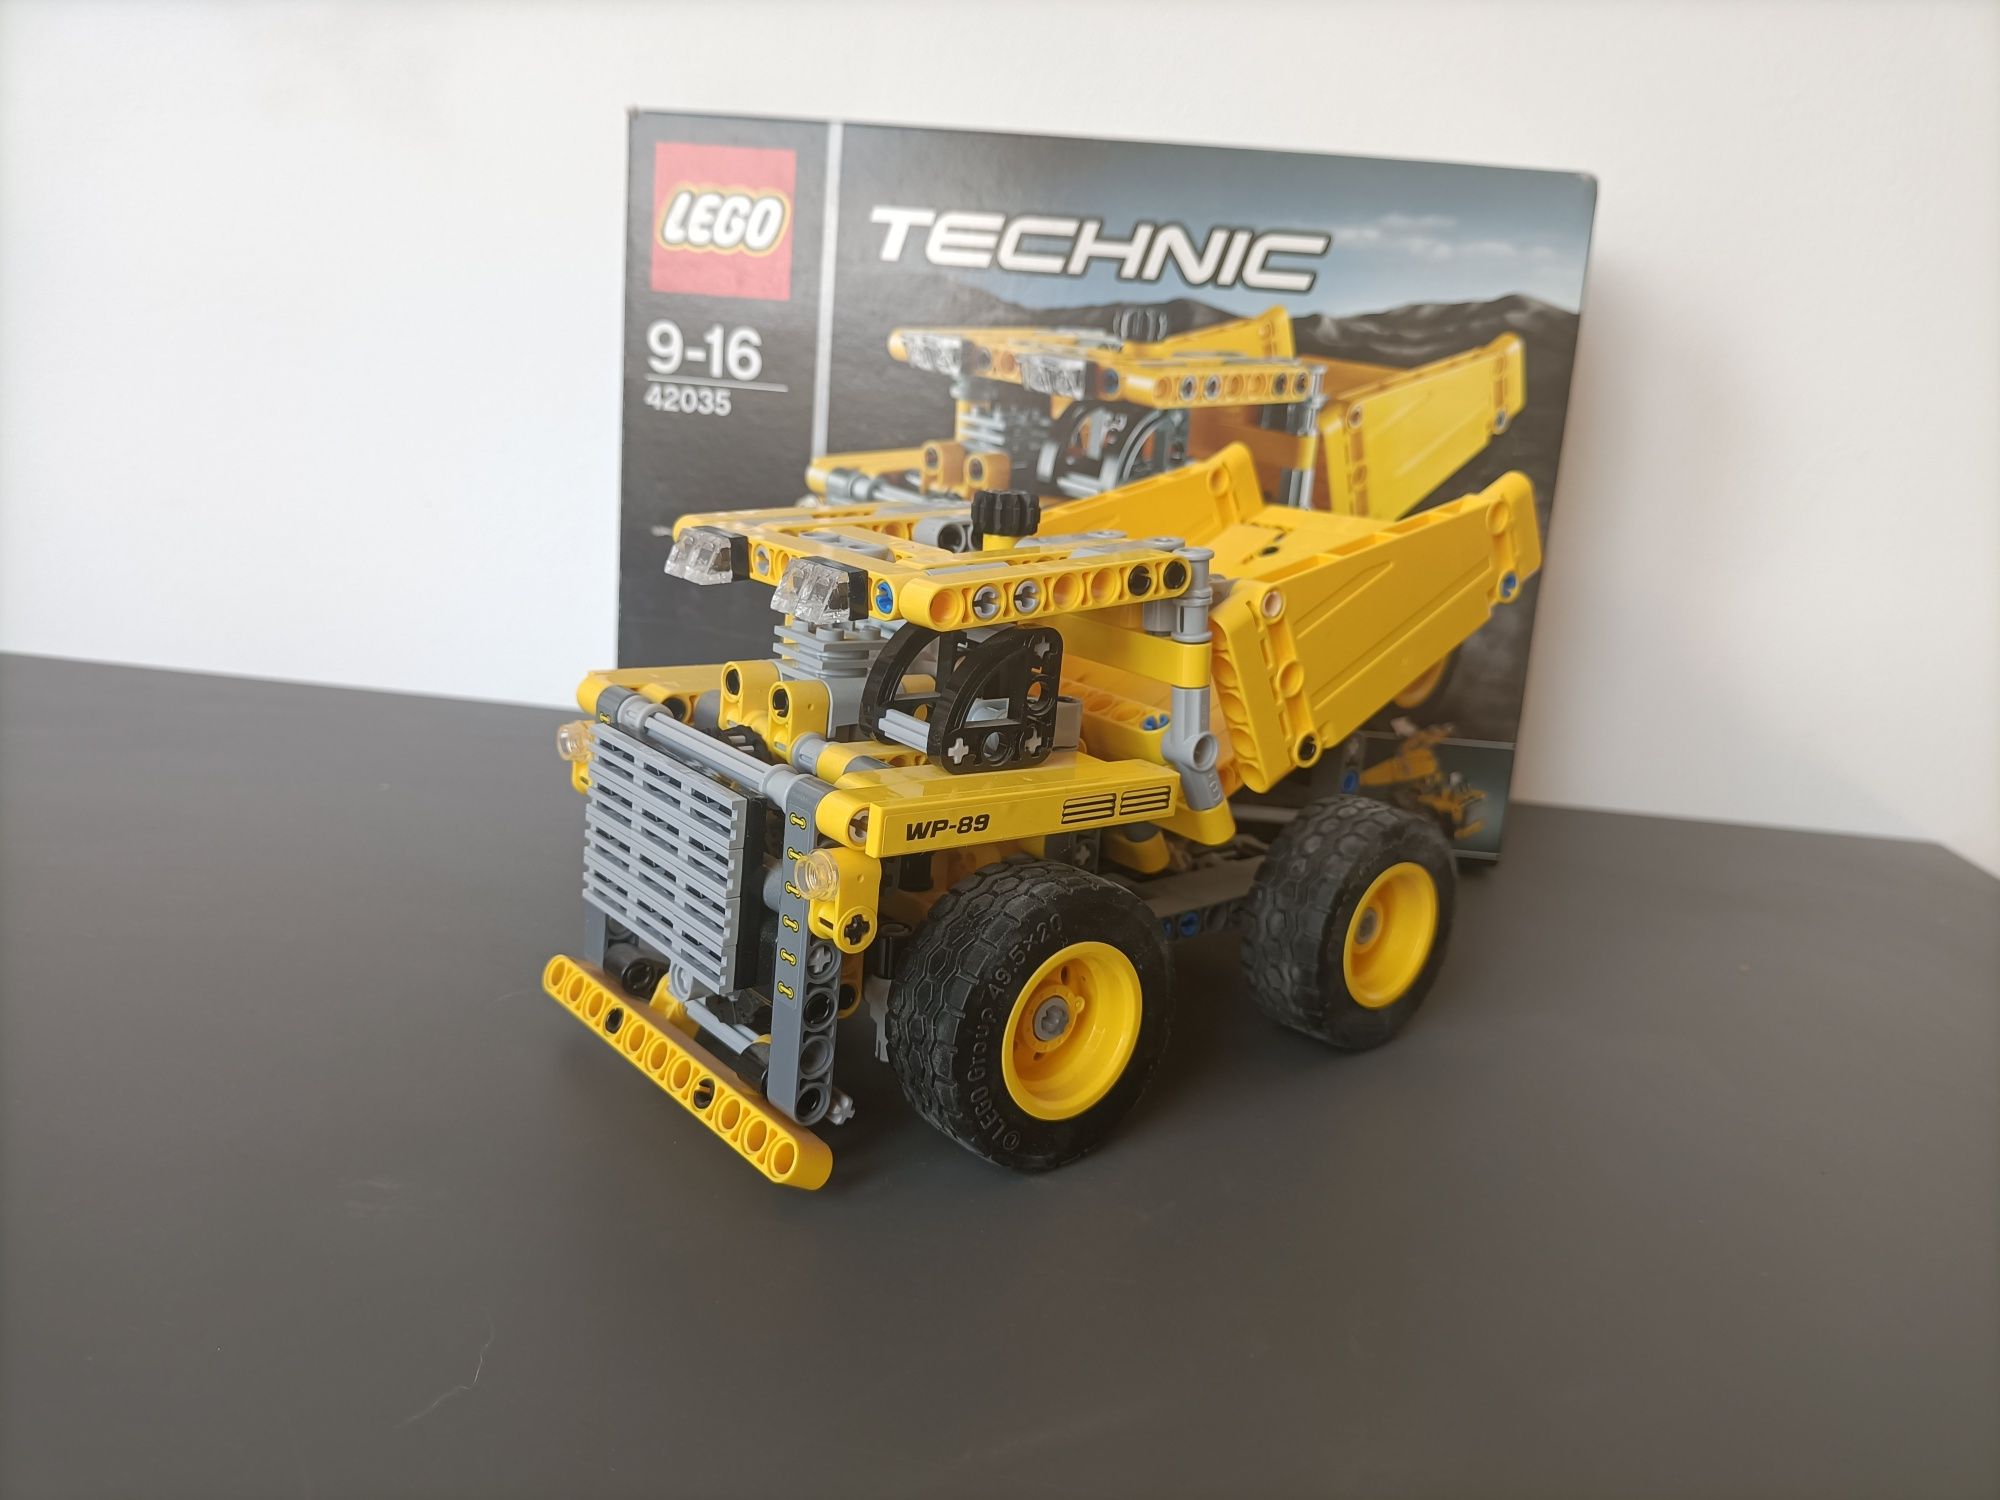 LEGO TECHNIC 42035 Wywrotka